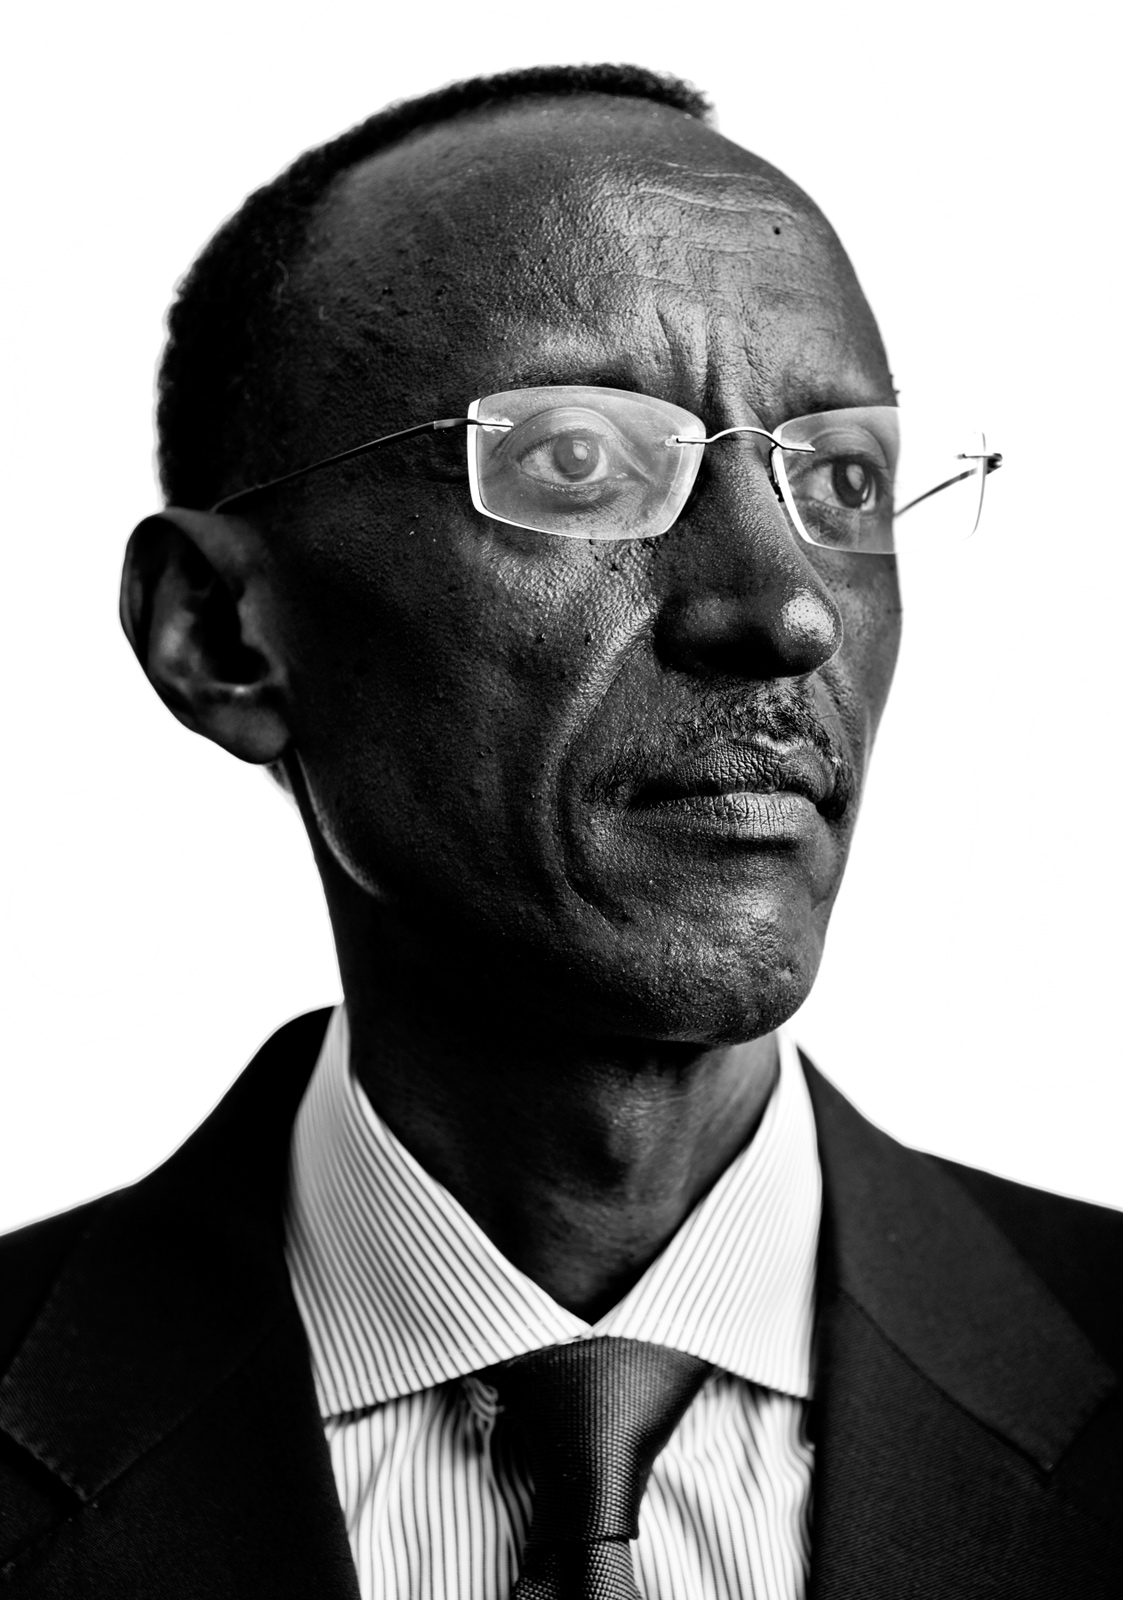 Paul_Kagame_CU_updated